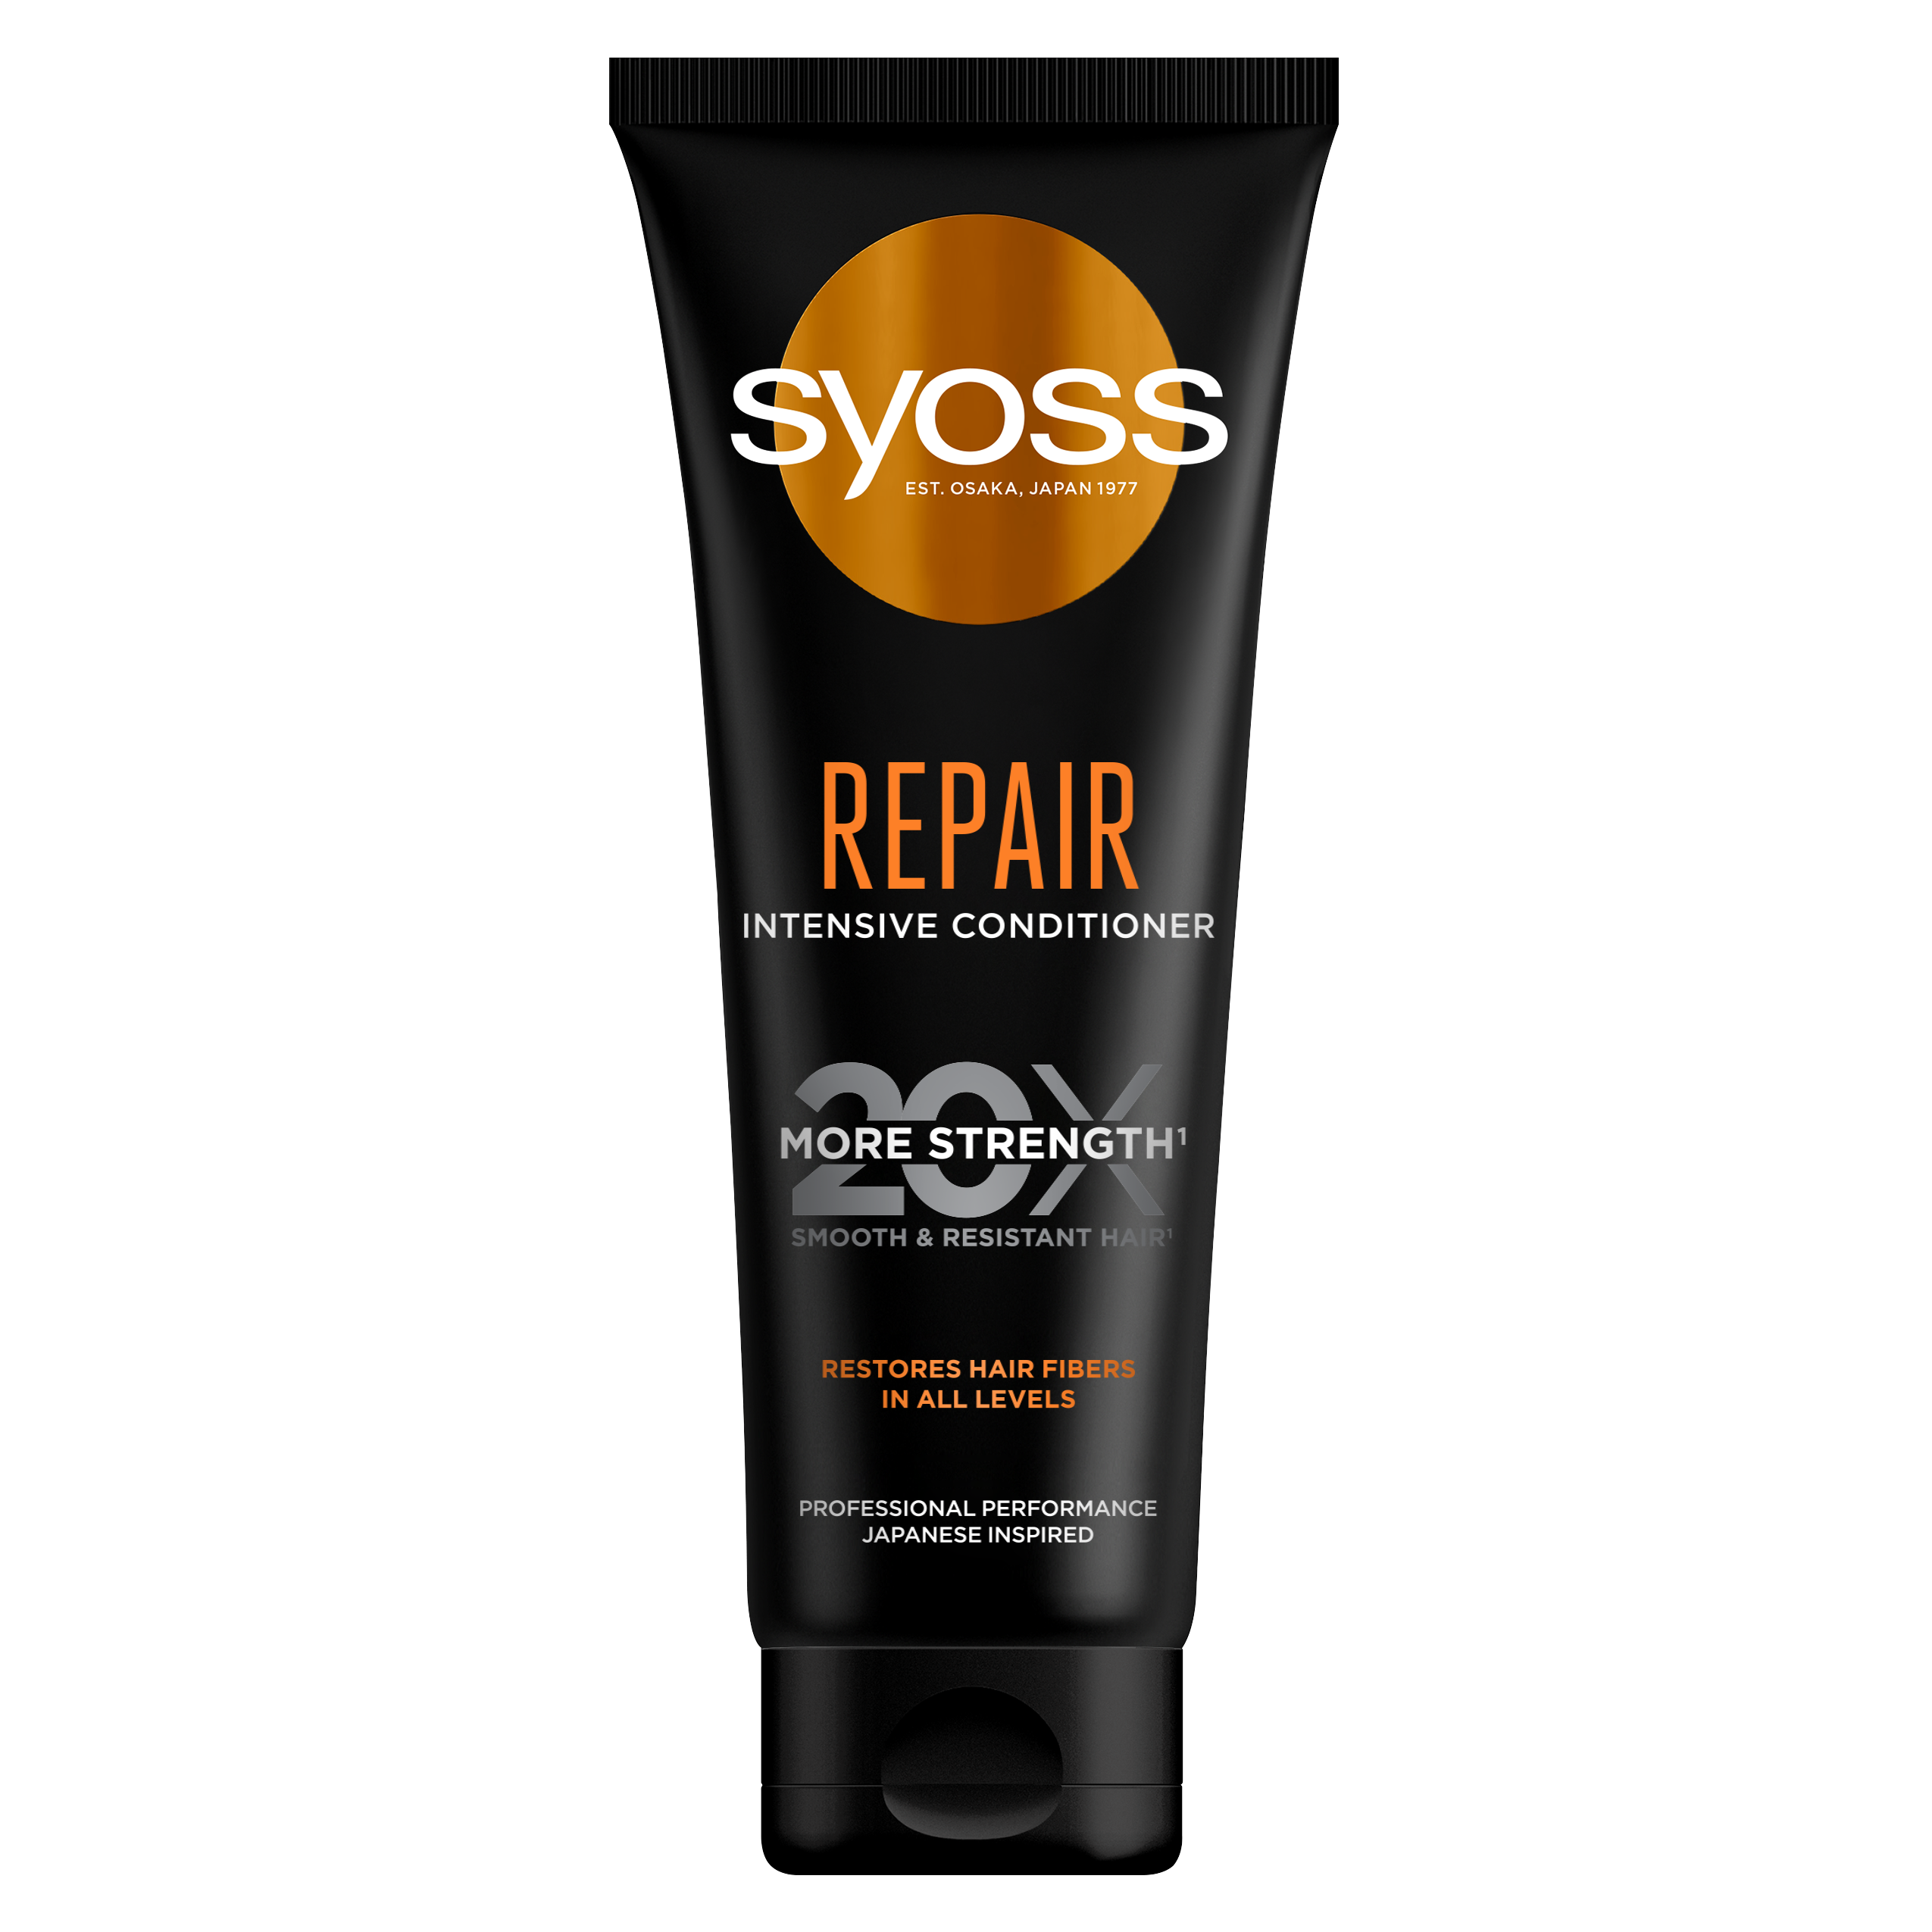 Інтенсивний кондиціонер Syoss Repair, для пошкодженого волосся, 250 мл - фото 1